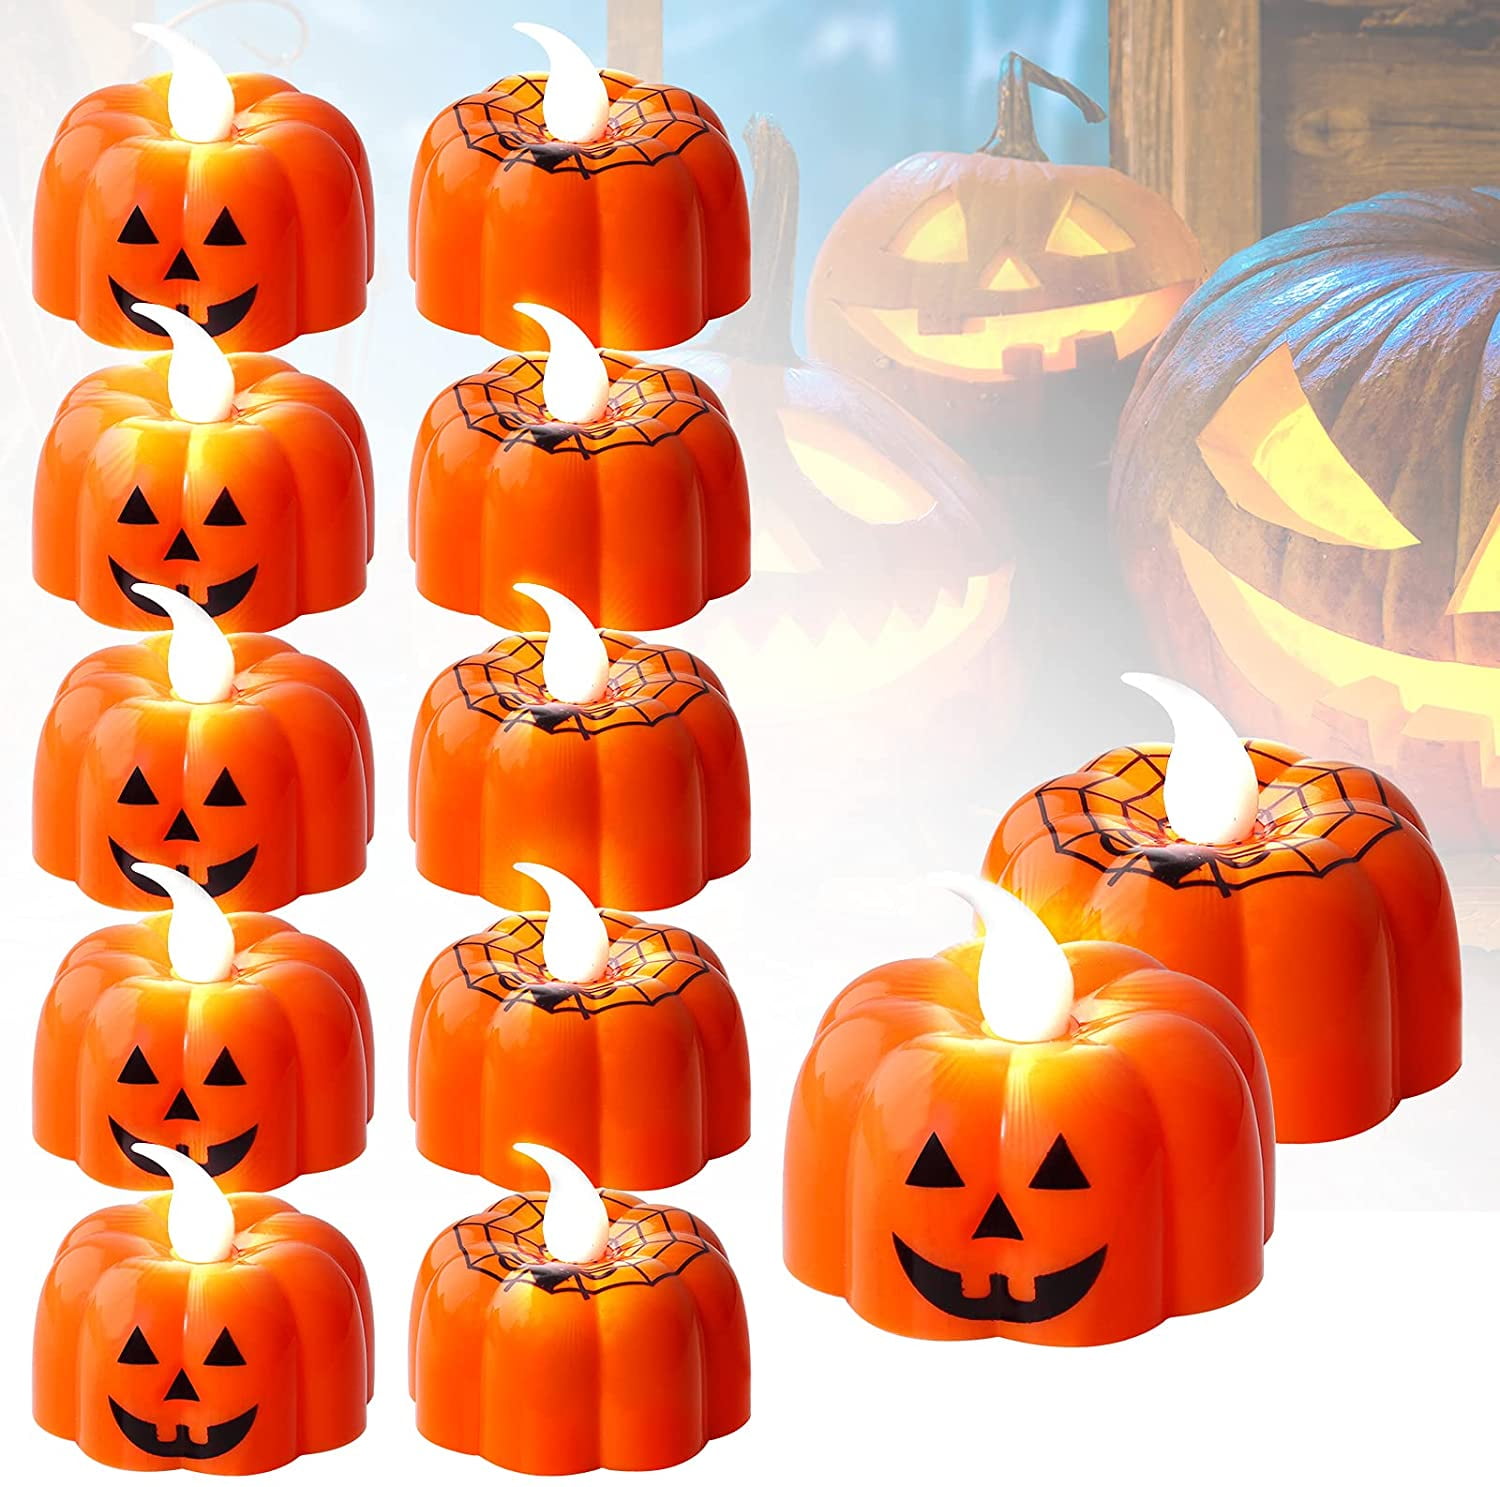 12Pcs 3D Pumpkin LED Candle Light Flameless Tealights Flickering Halloween Decor 